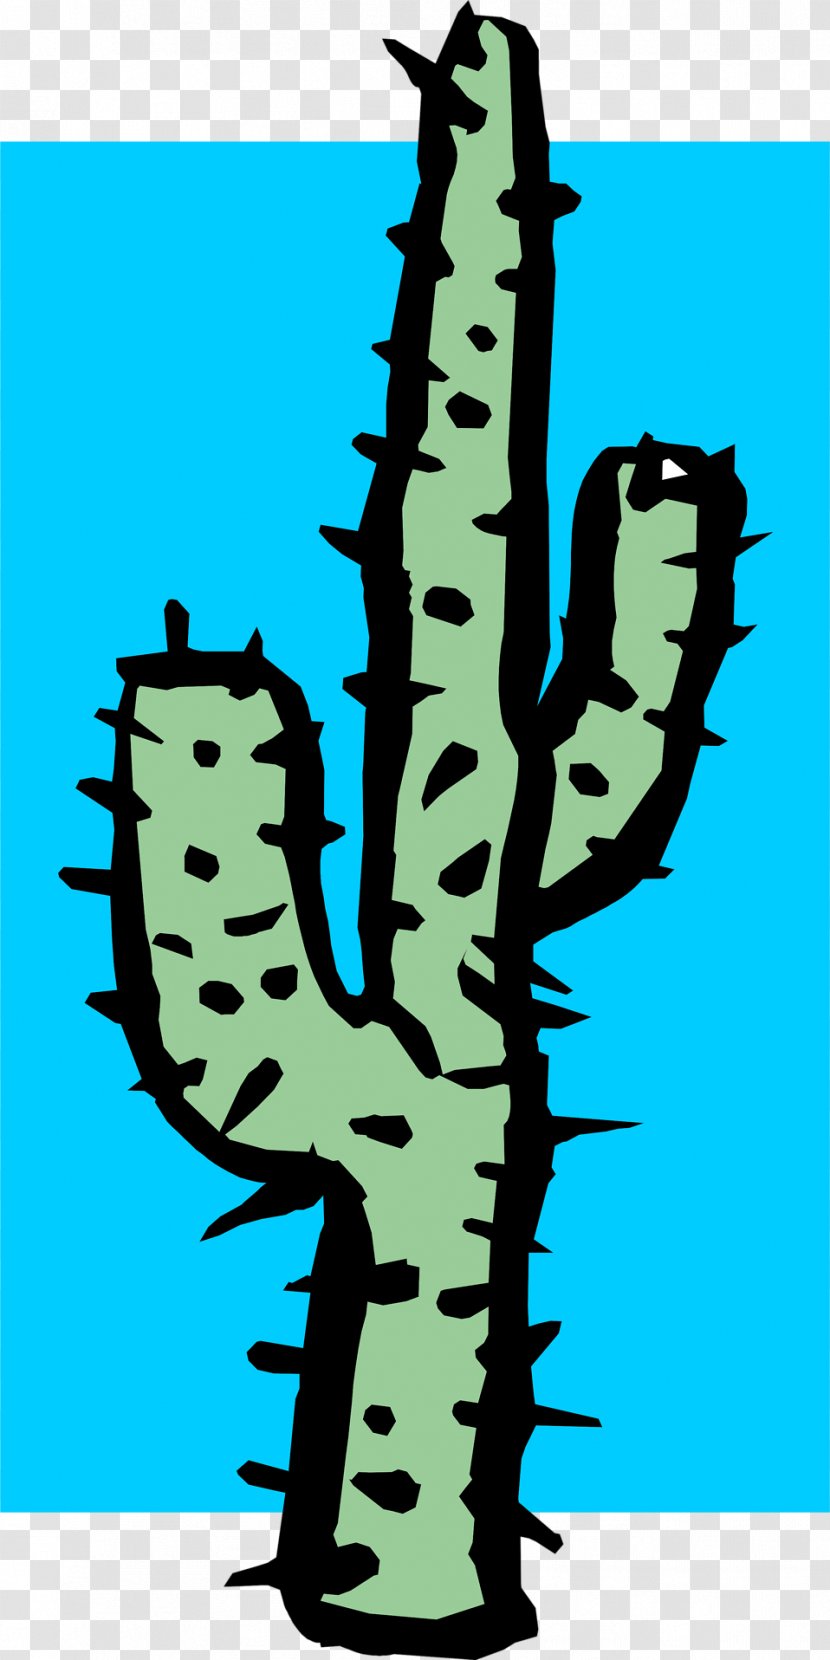 Cactaceae Clip Art - Plant - Cactus Background Transparent PNG